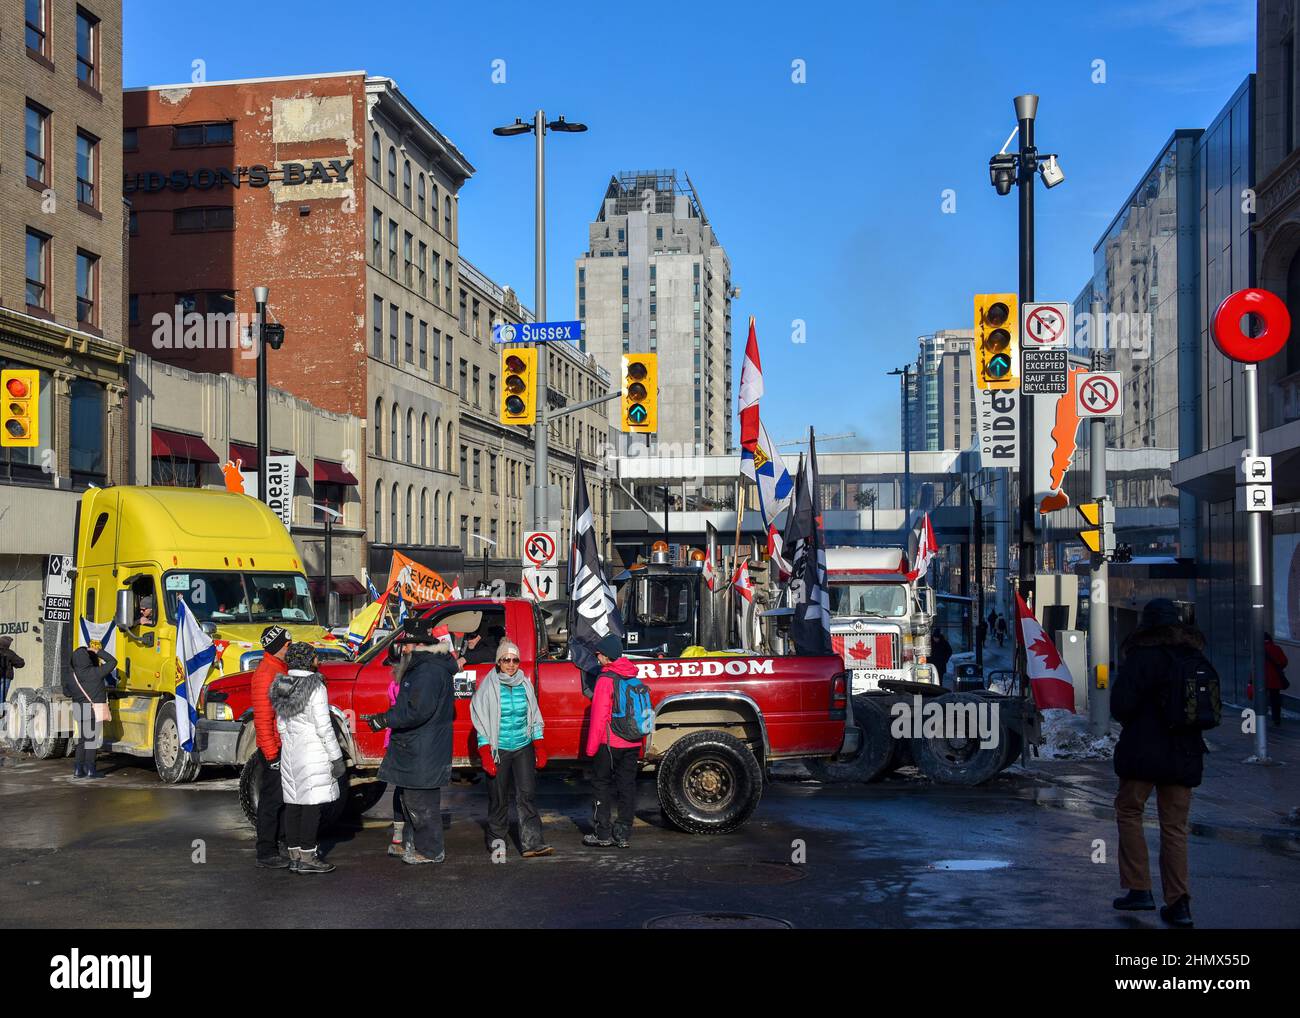 Ottawa, Kanada - 7. Februar 2022: Konvoi-Lastwagen stellen im Rahmen des Protestes des Trucker-Konvoi-Mandats die Rideau-Straße, eine Hauptdurchgangsstraße, zur Verfügung. Der Protest hat einen Großteil der Innenstadt von Ottawa stillgesetzt und für die Anwohner und die Wirtschaft viel Leid verursacht. Stockfoto